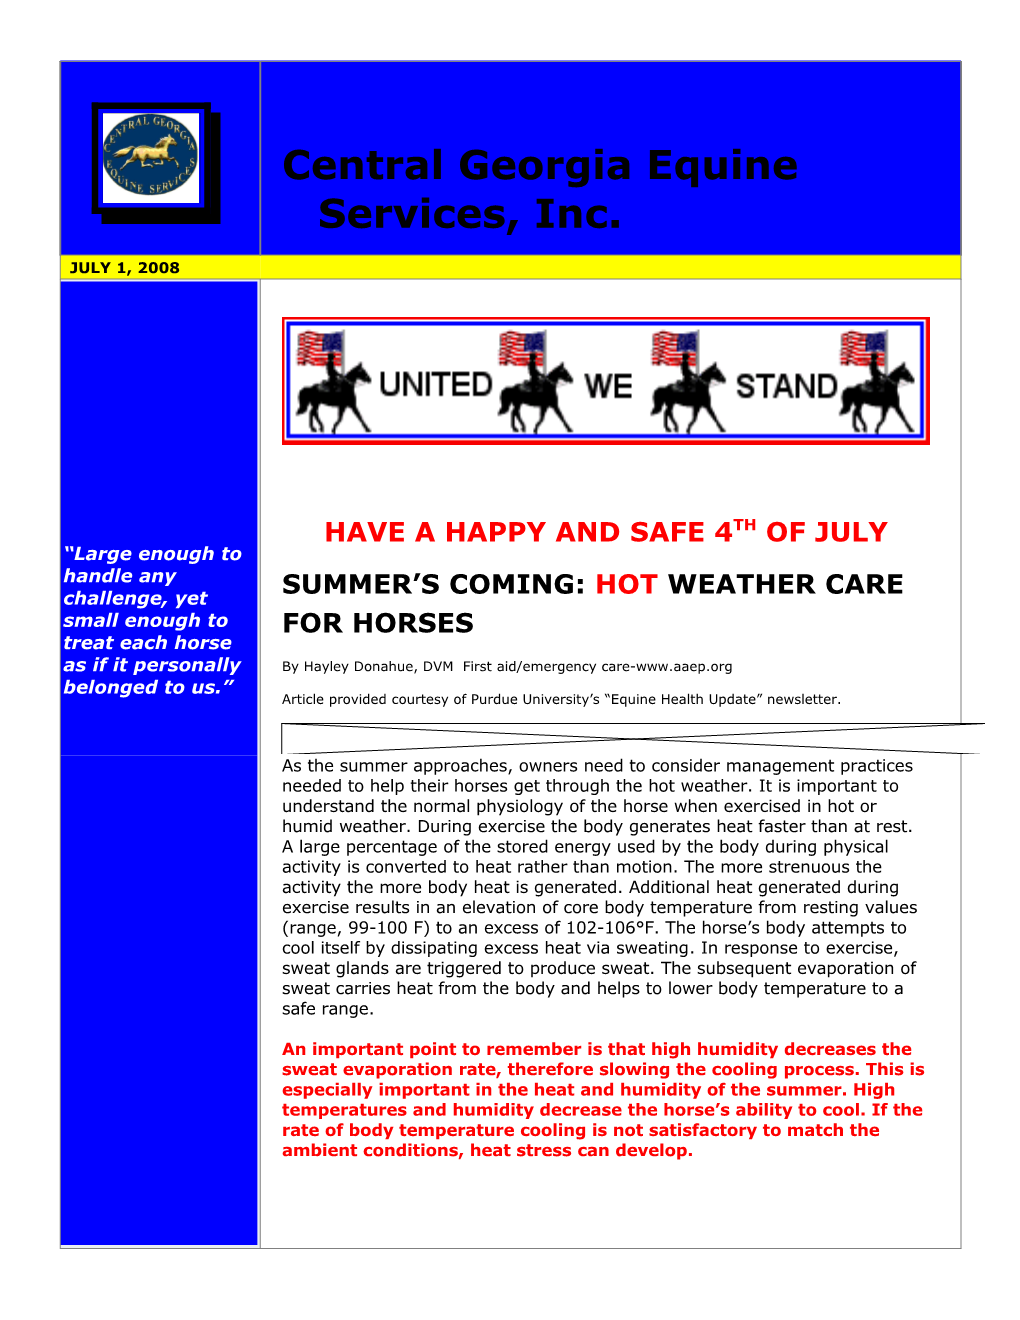 Central Georgia Equine Services, Inc